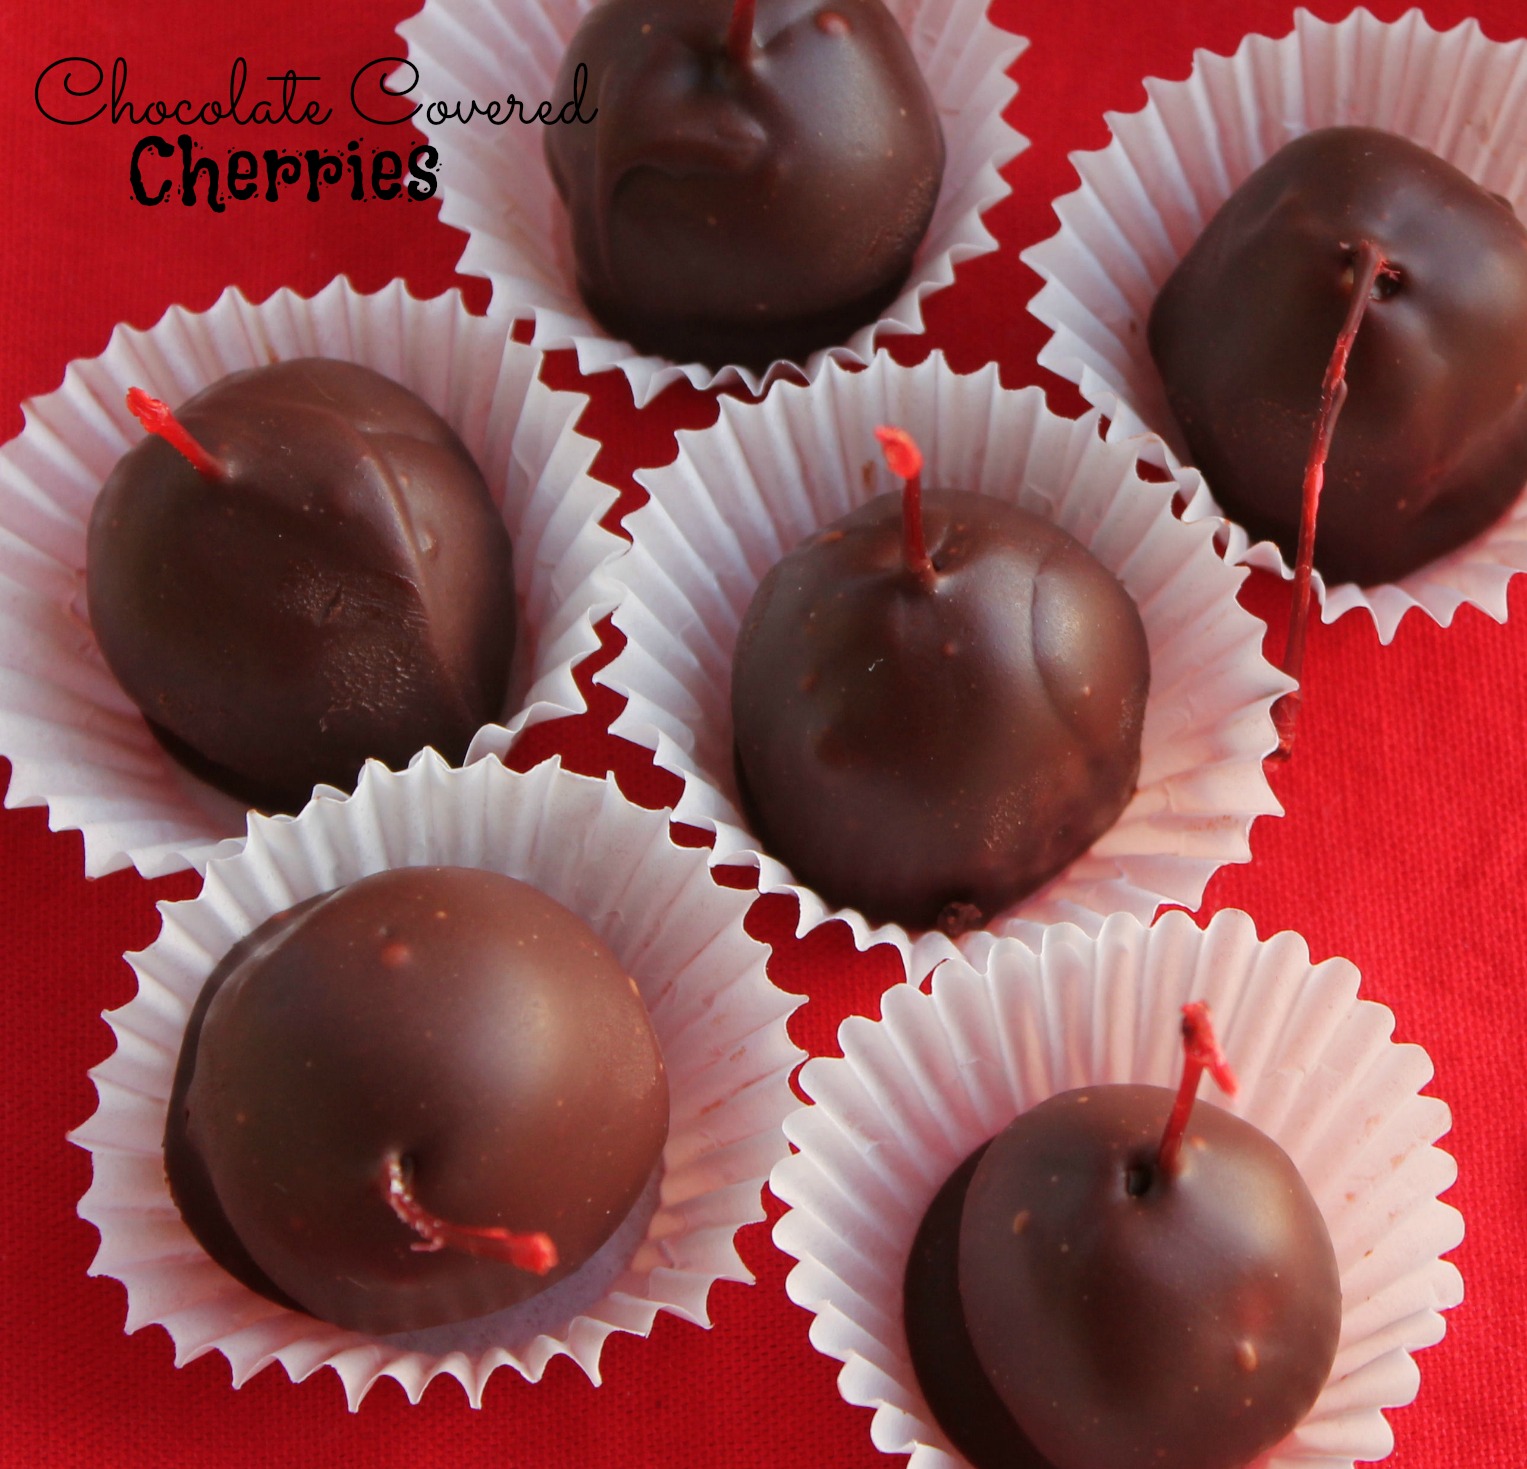 Chocolate covered cherries recipe